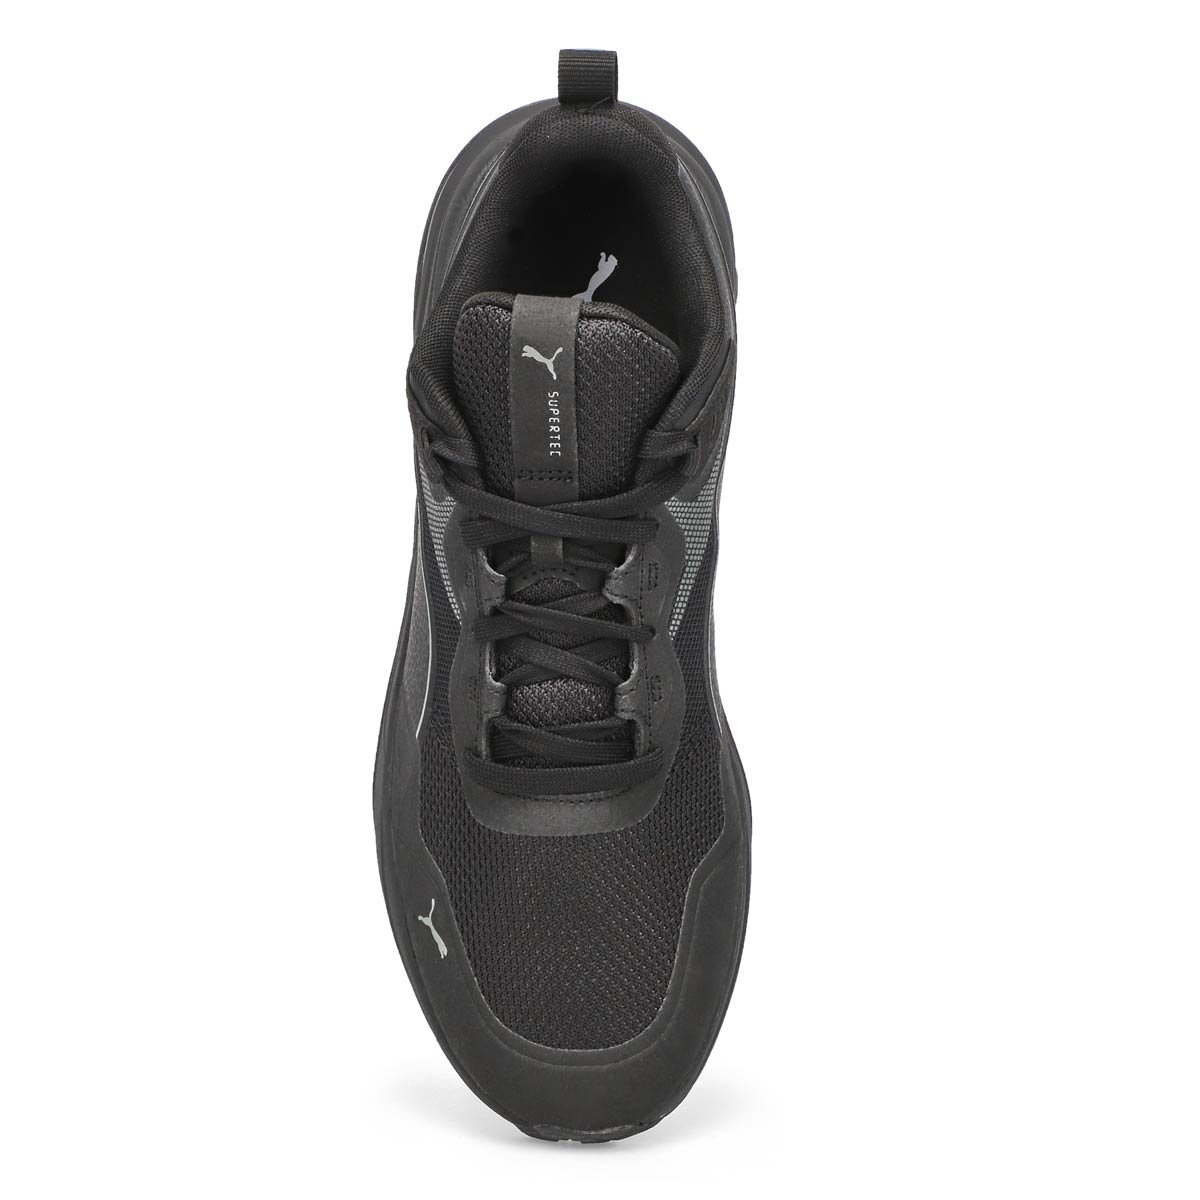 Men's Supertec Lace Up Sneaker-Black/Black